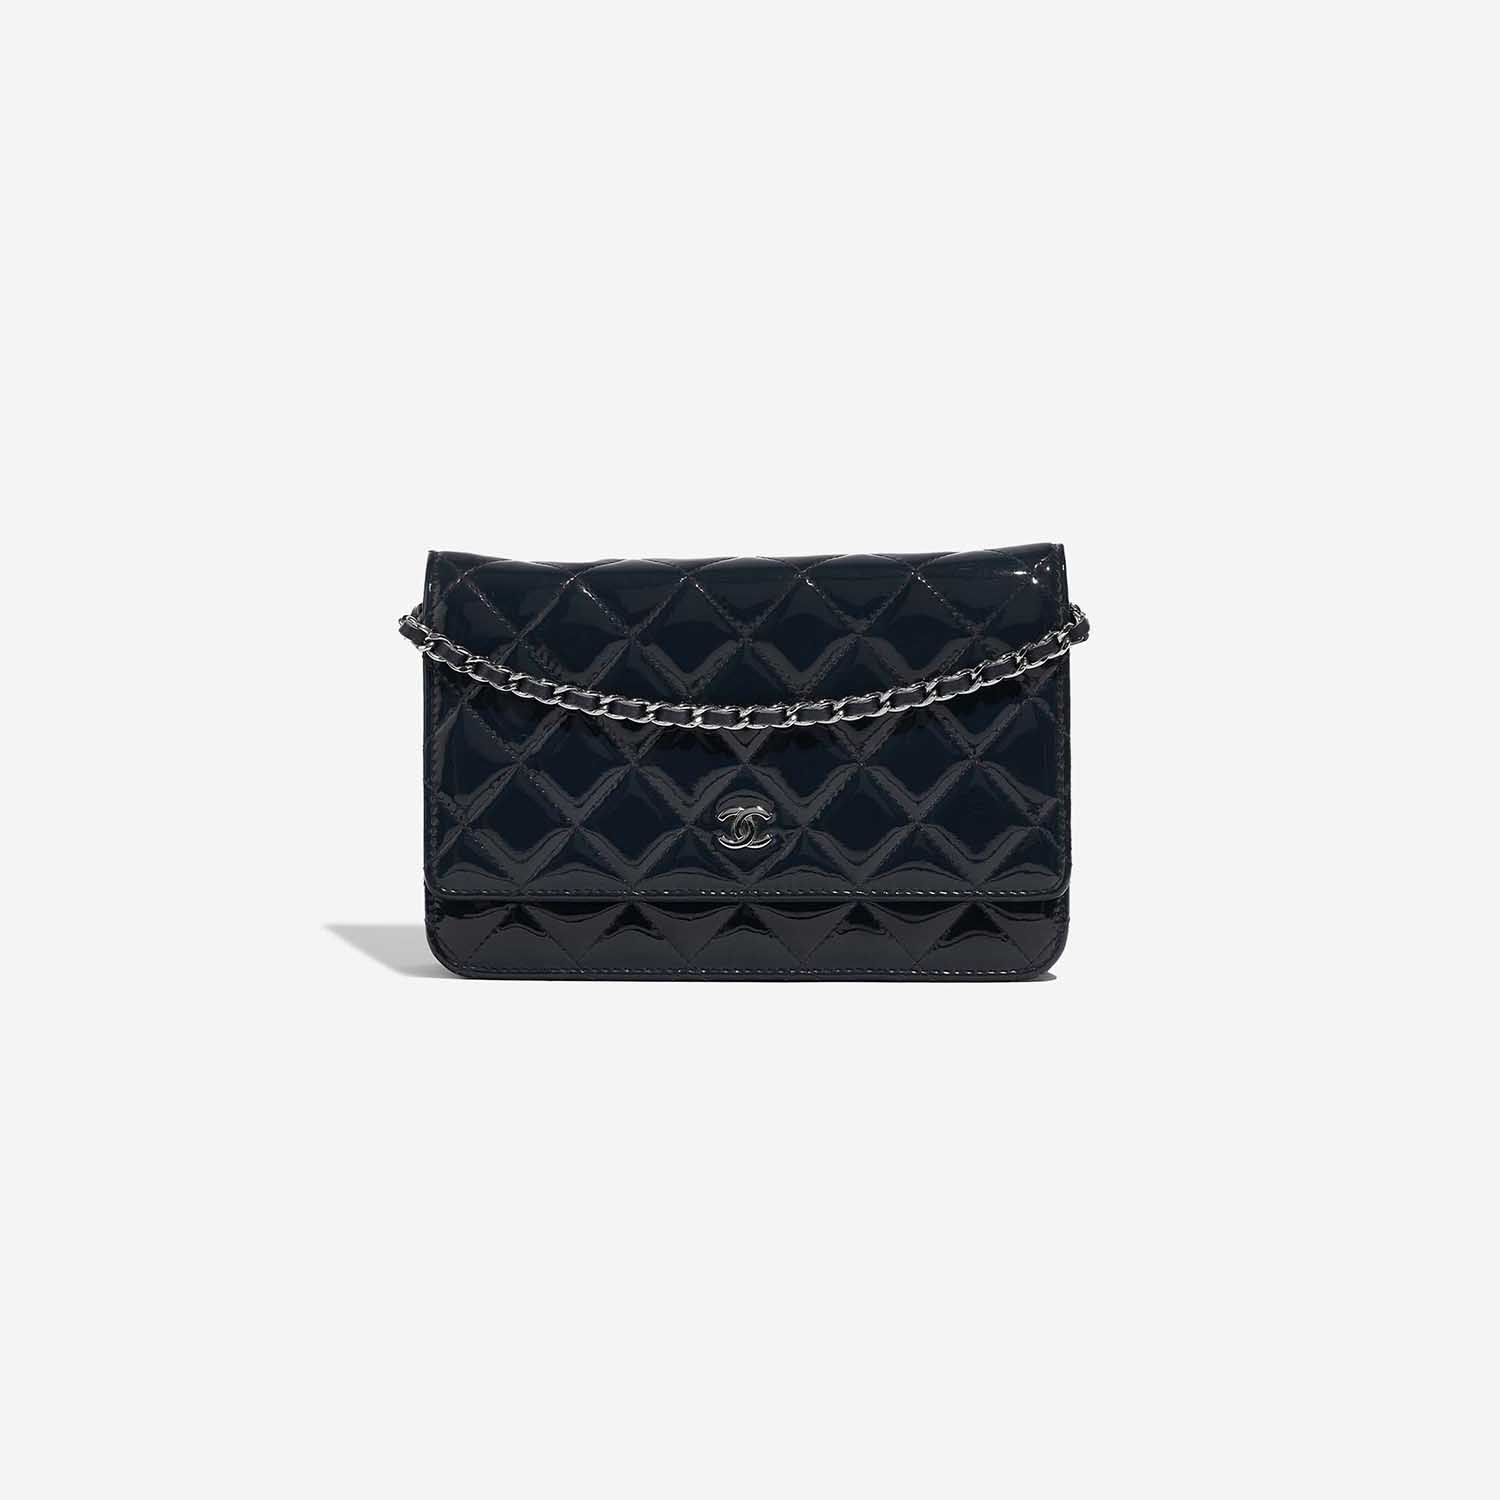 Chanel Timeless WOC DarkBlue Front | Verkaufen Sie Ihre Designer-Tasche auf Saclab.com